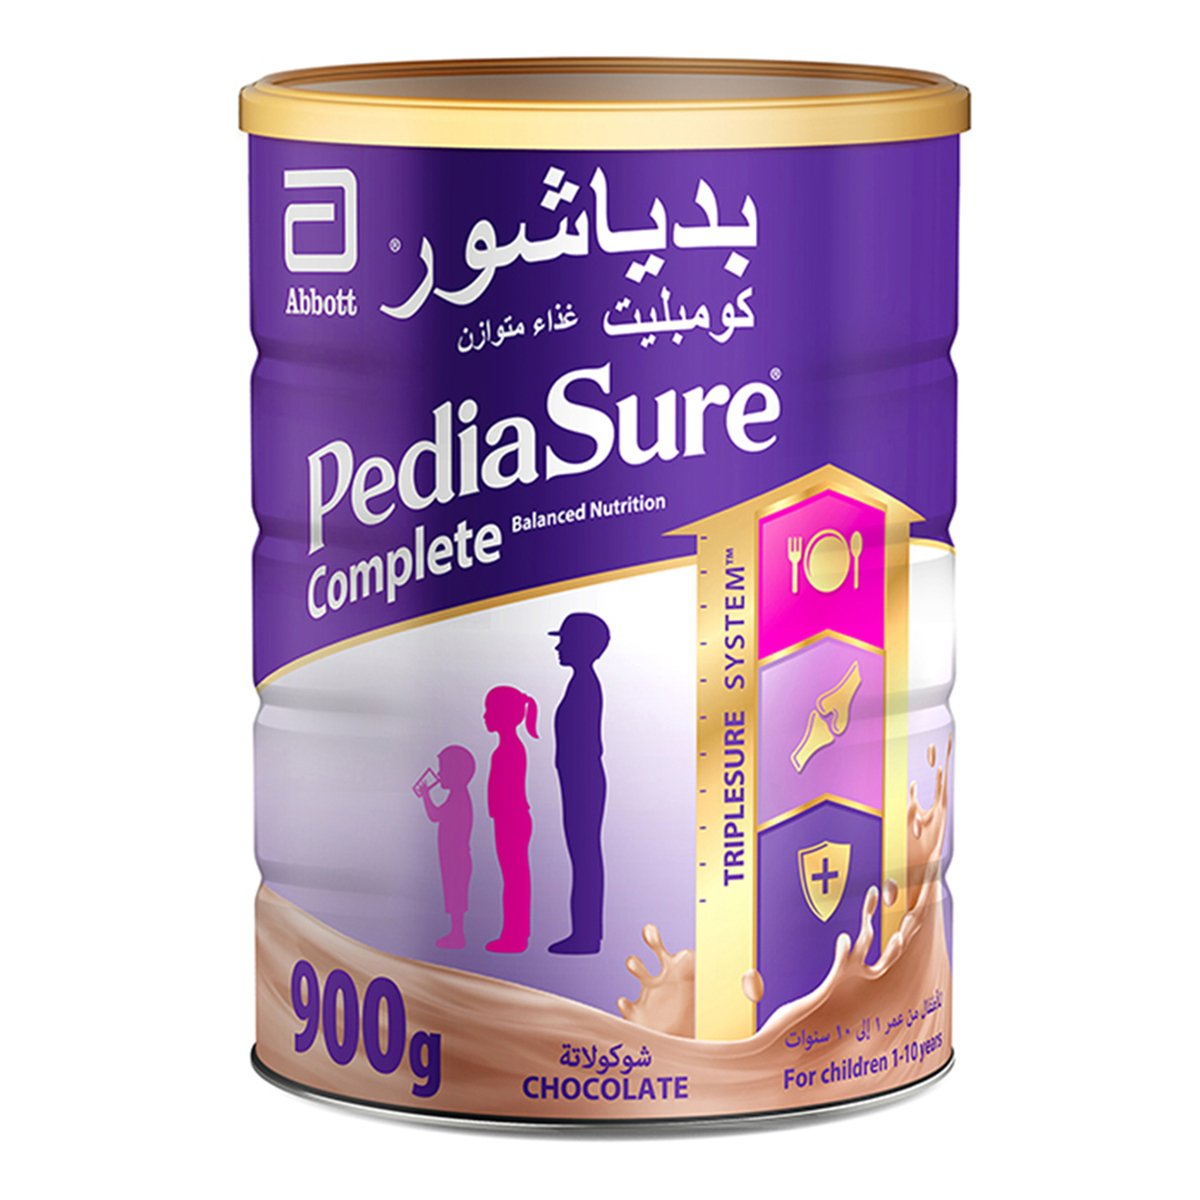 Buy Pediasure Complete Balanced Nutrition Chocolate For Children 1-10 Years 900 g Online at Best Price | Baby milk powders & formula | Lulu UAE in UAE